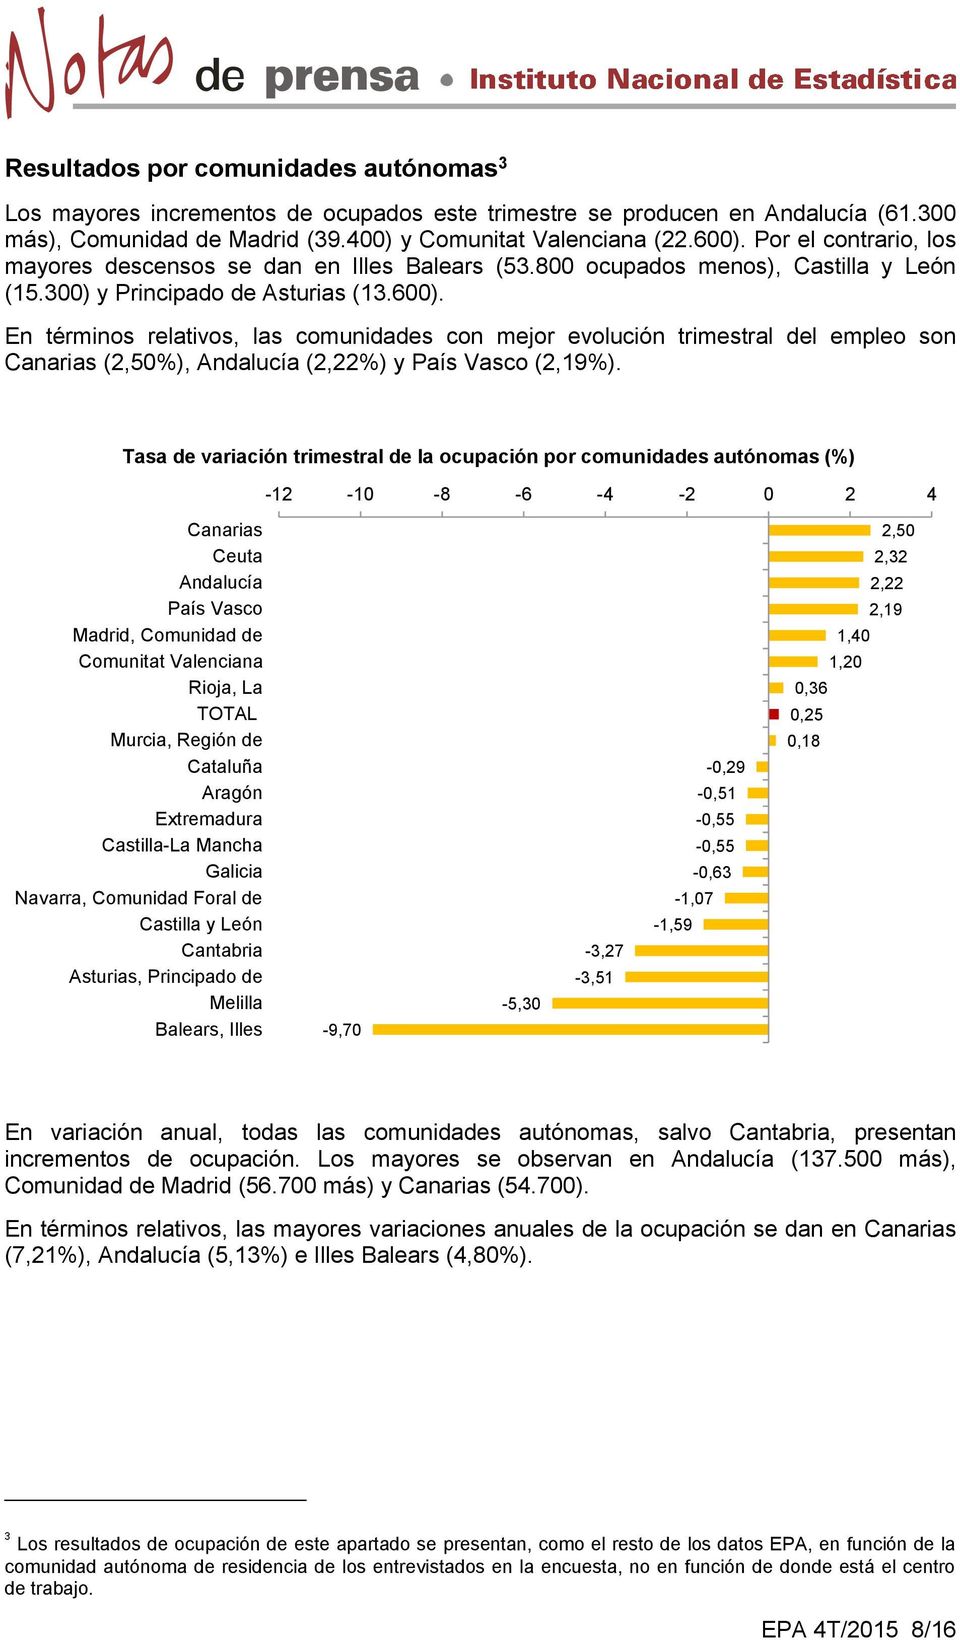 En términos relativos, las comunidades con mejor evolución trimestral del empleo son Canarias (2,50%), Andalucía (2,22%) y País Vasco (2,19%).